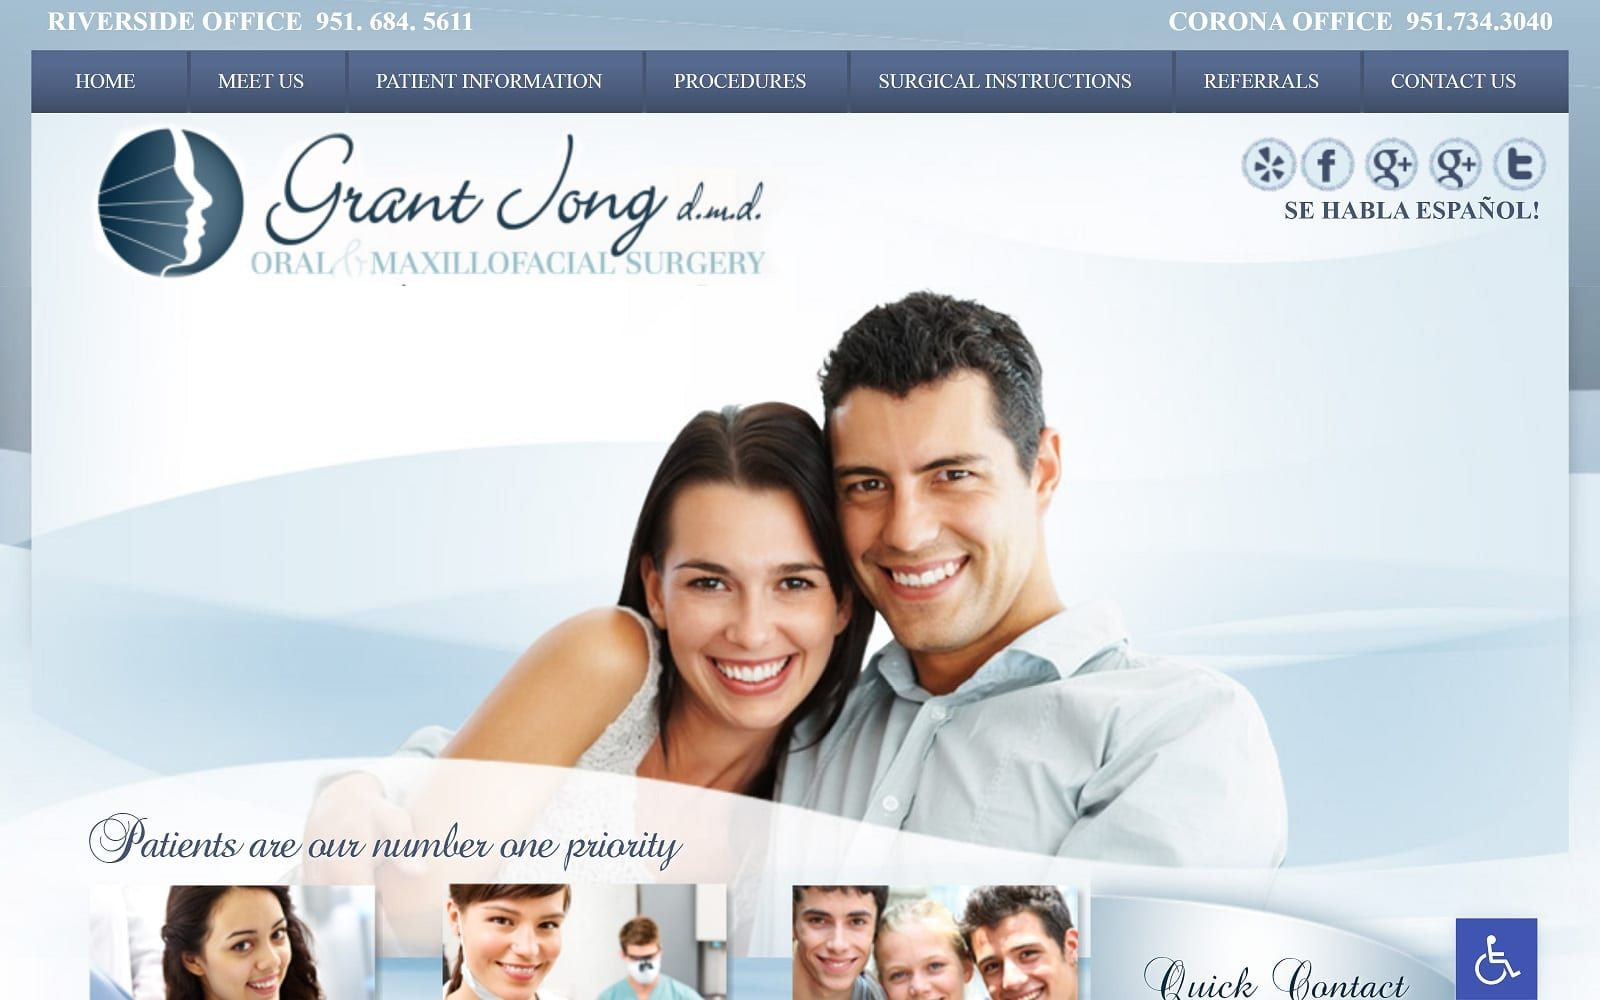 The screenshot of dr grant jong, dmd website